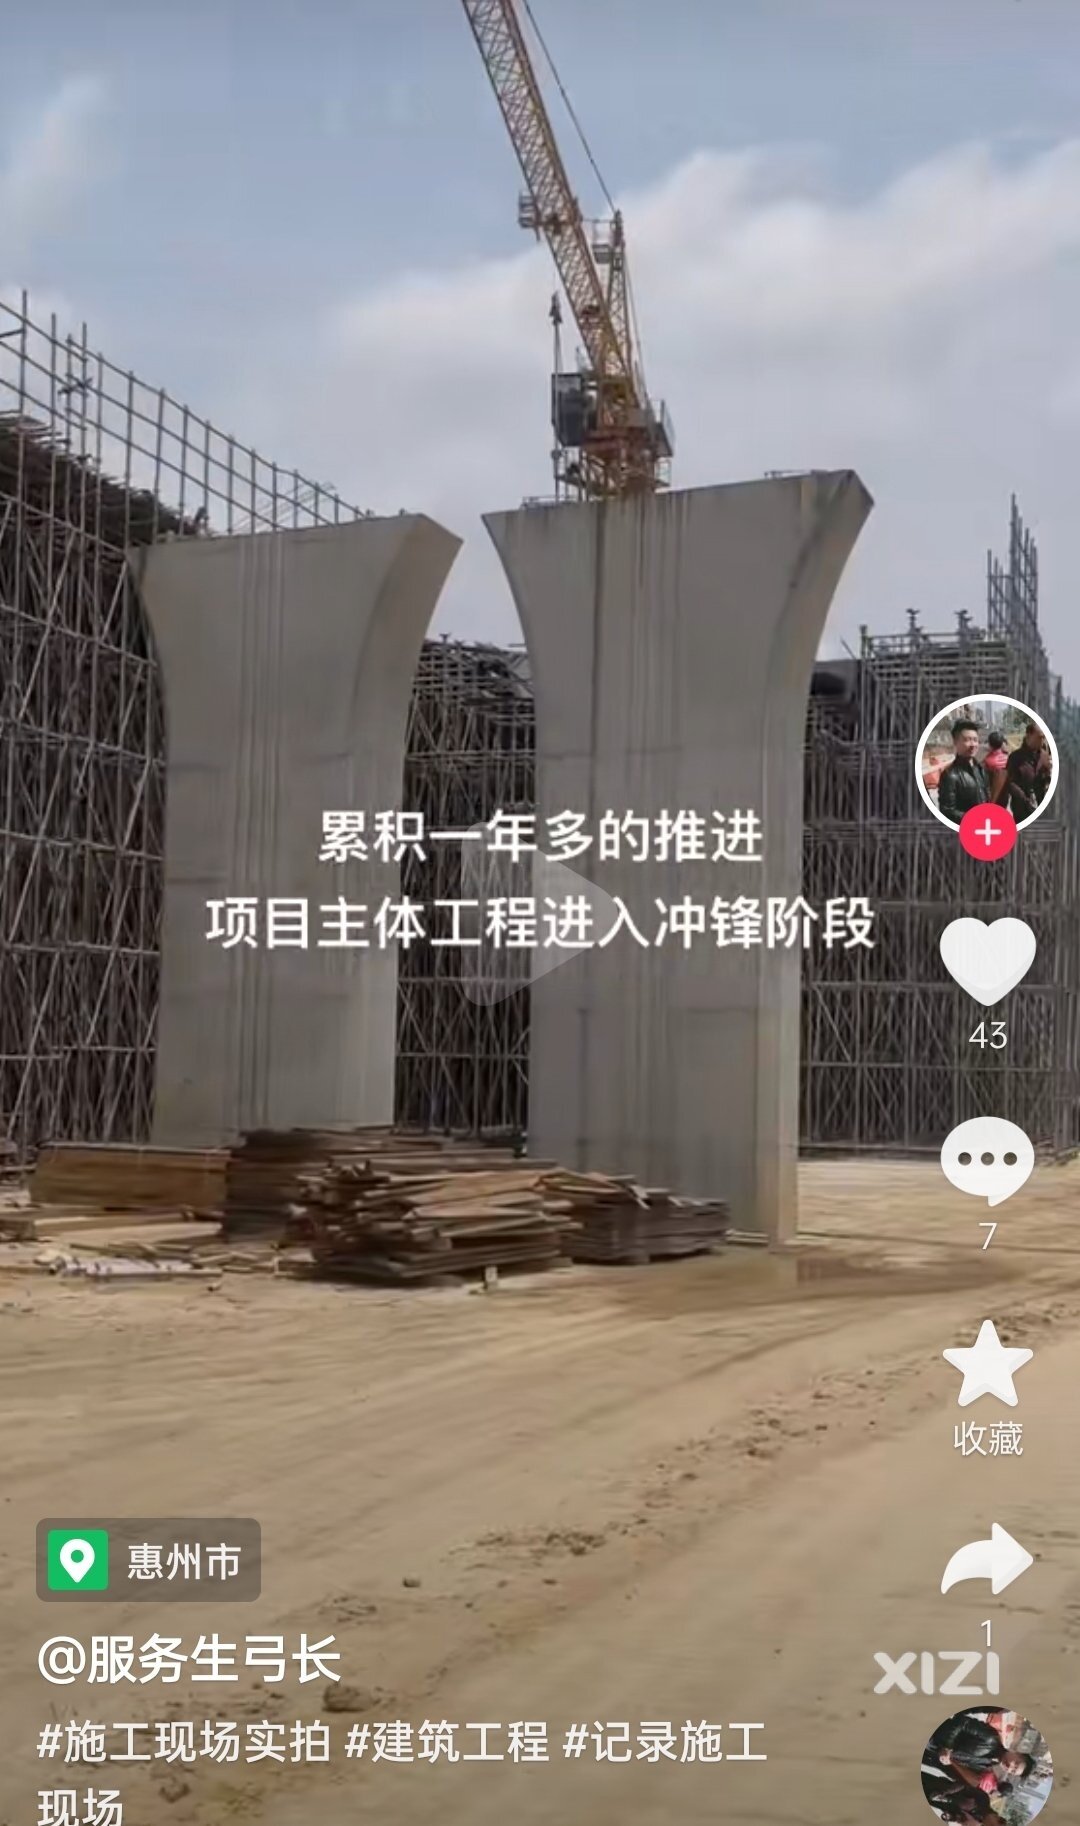 2023年建成通车无望了？环城西路西枝江大桥才开始进入冲刺建设阶段